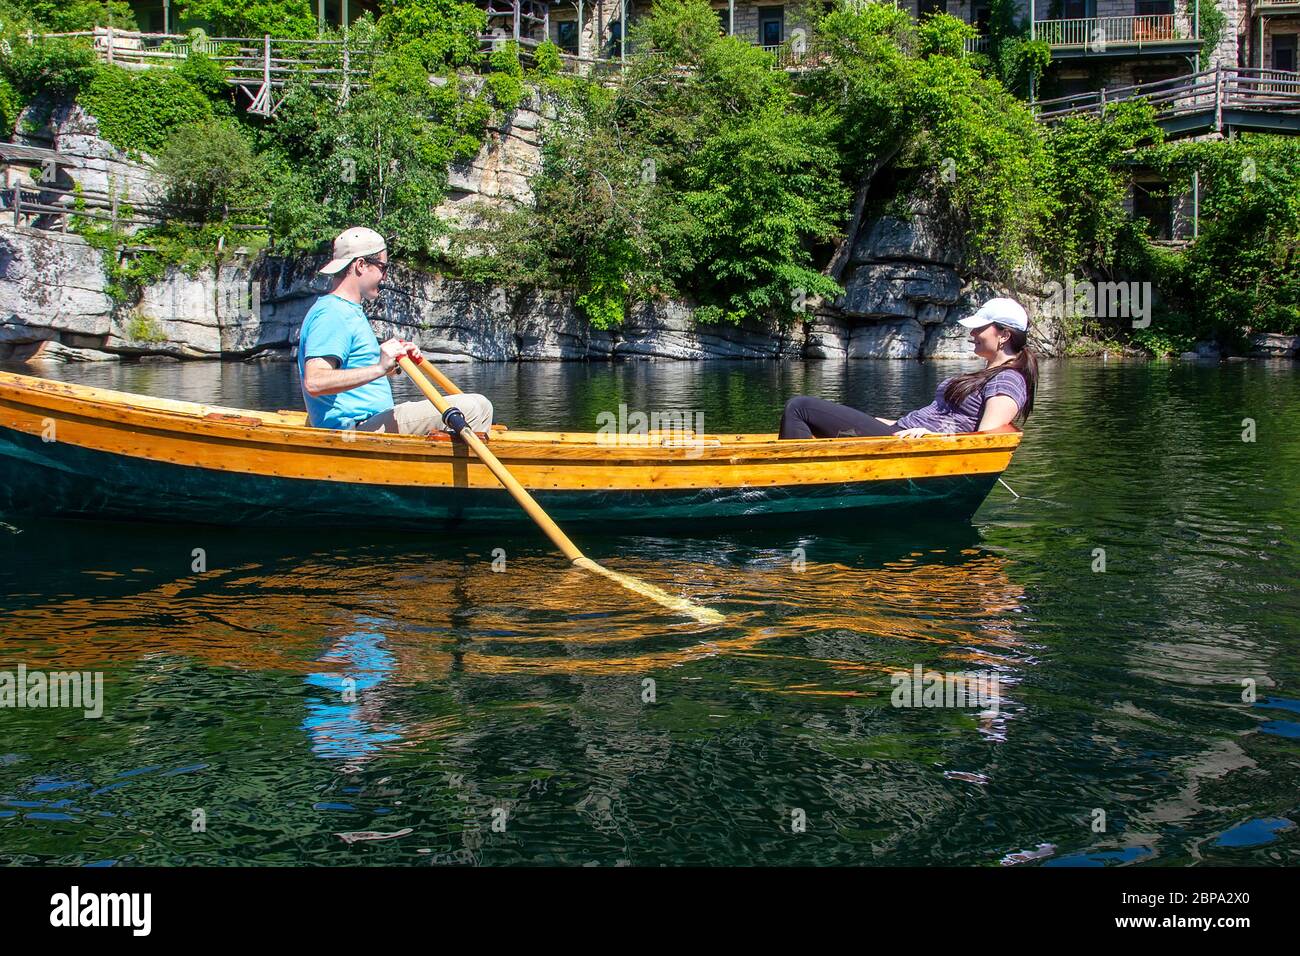 New Paltz, Nueva York - 22 de junio de 2014: Pareja joven navega en un bote de fila en el Lago Mohonk, un hotel de estilo victoriano ubicado en las Montañas Shawangunk Foto de stock